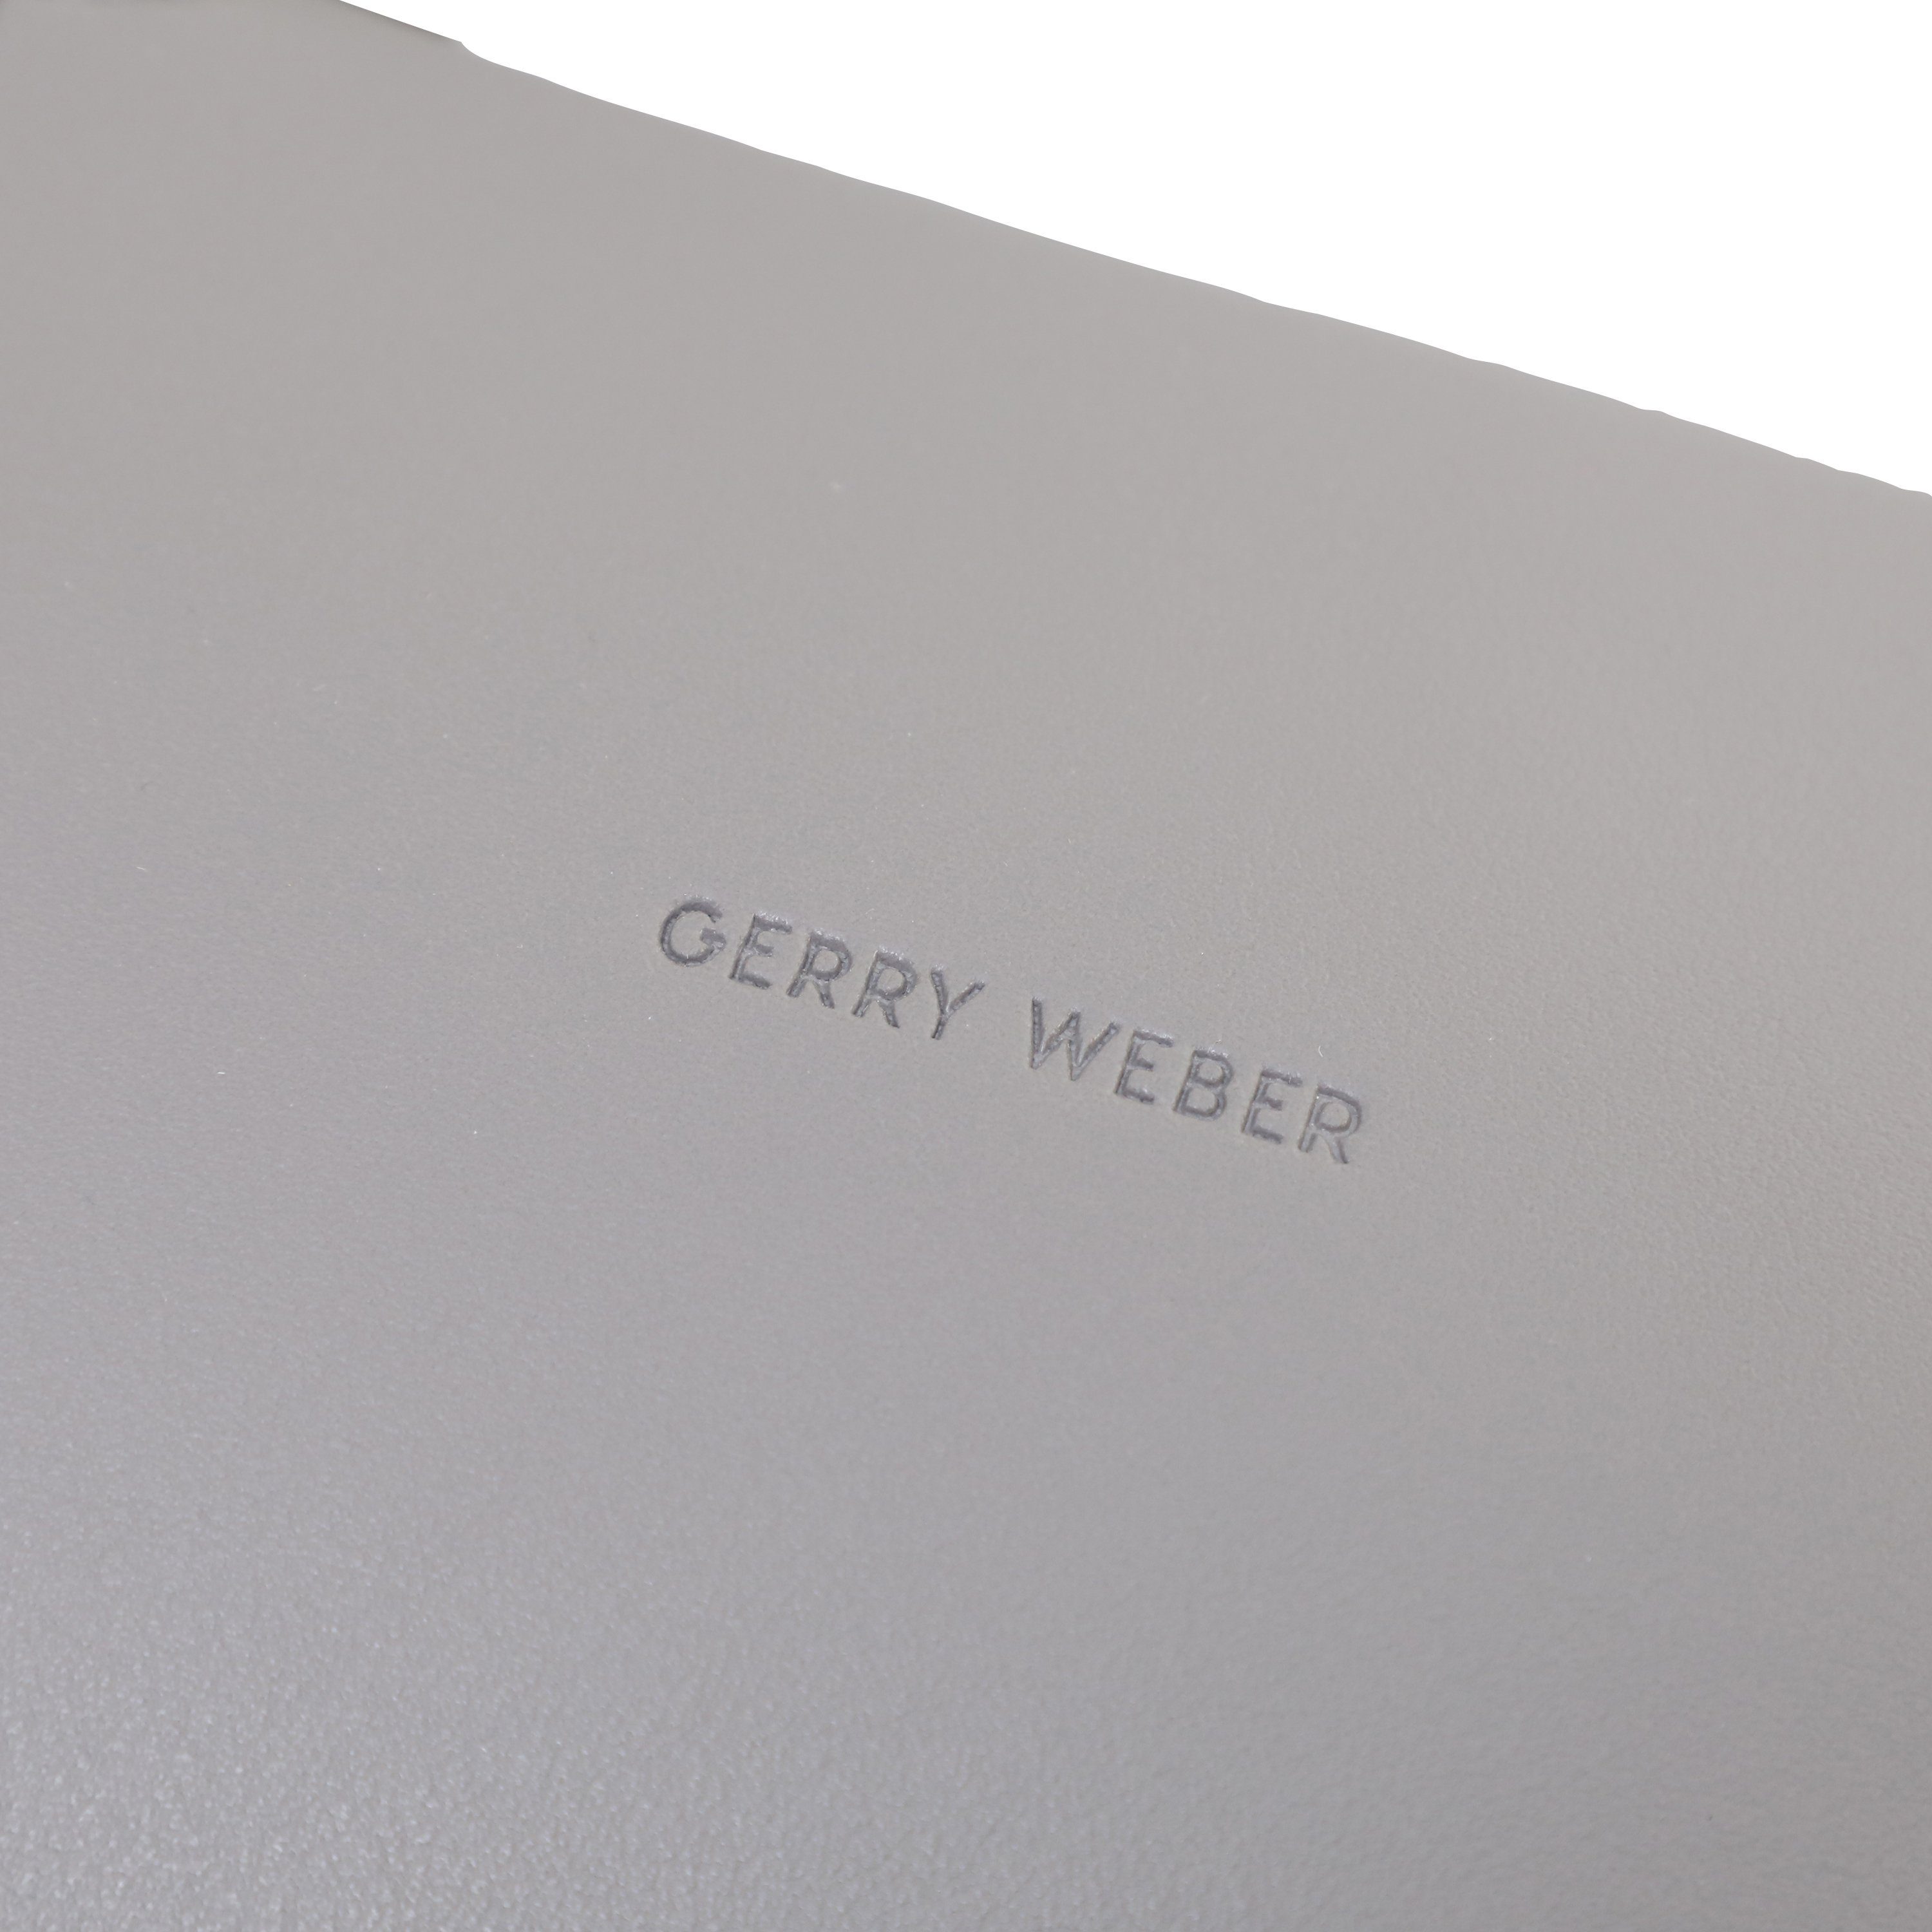 GERRY Set, kein grey (kein Shopper WEBER Set)